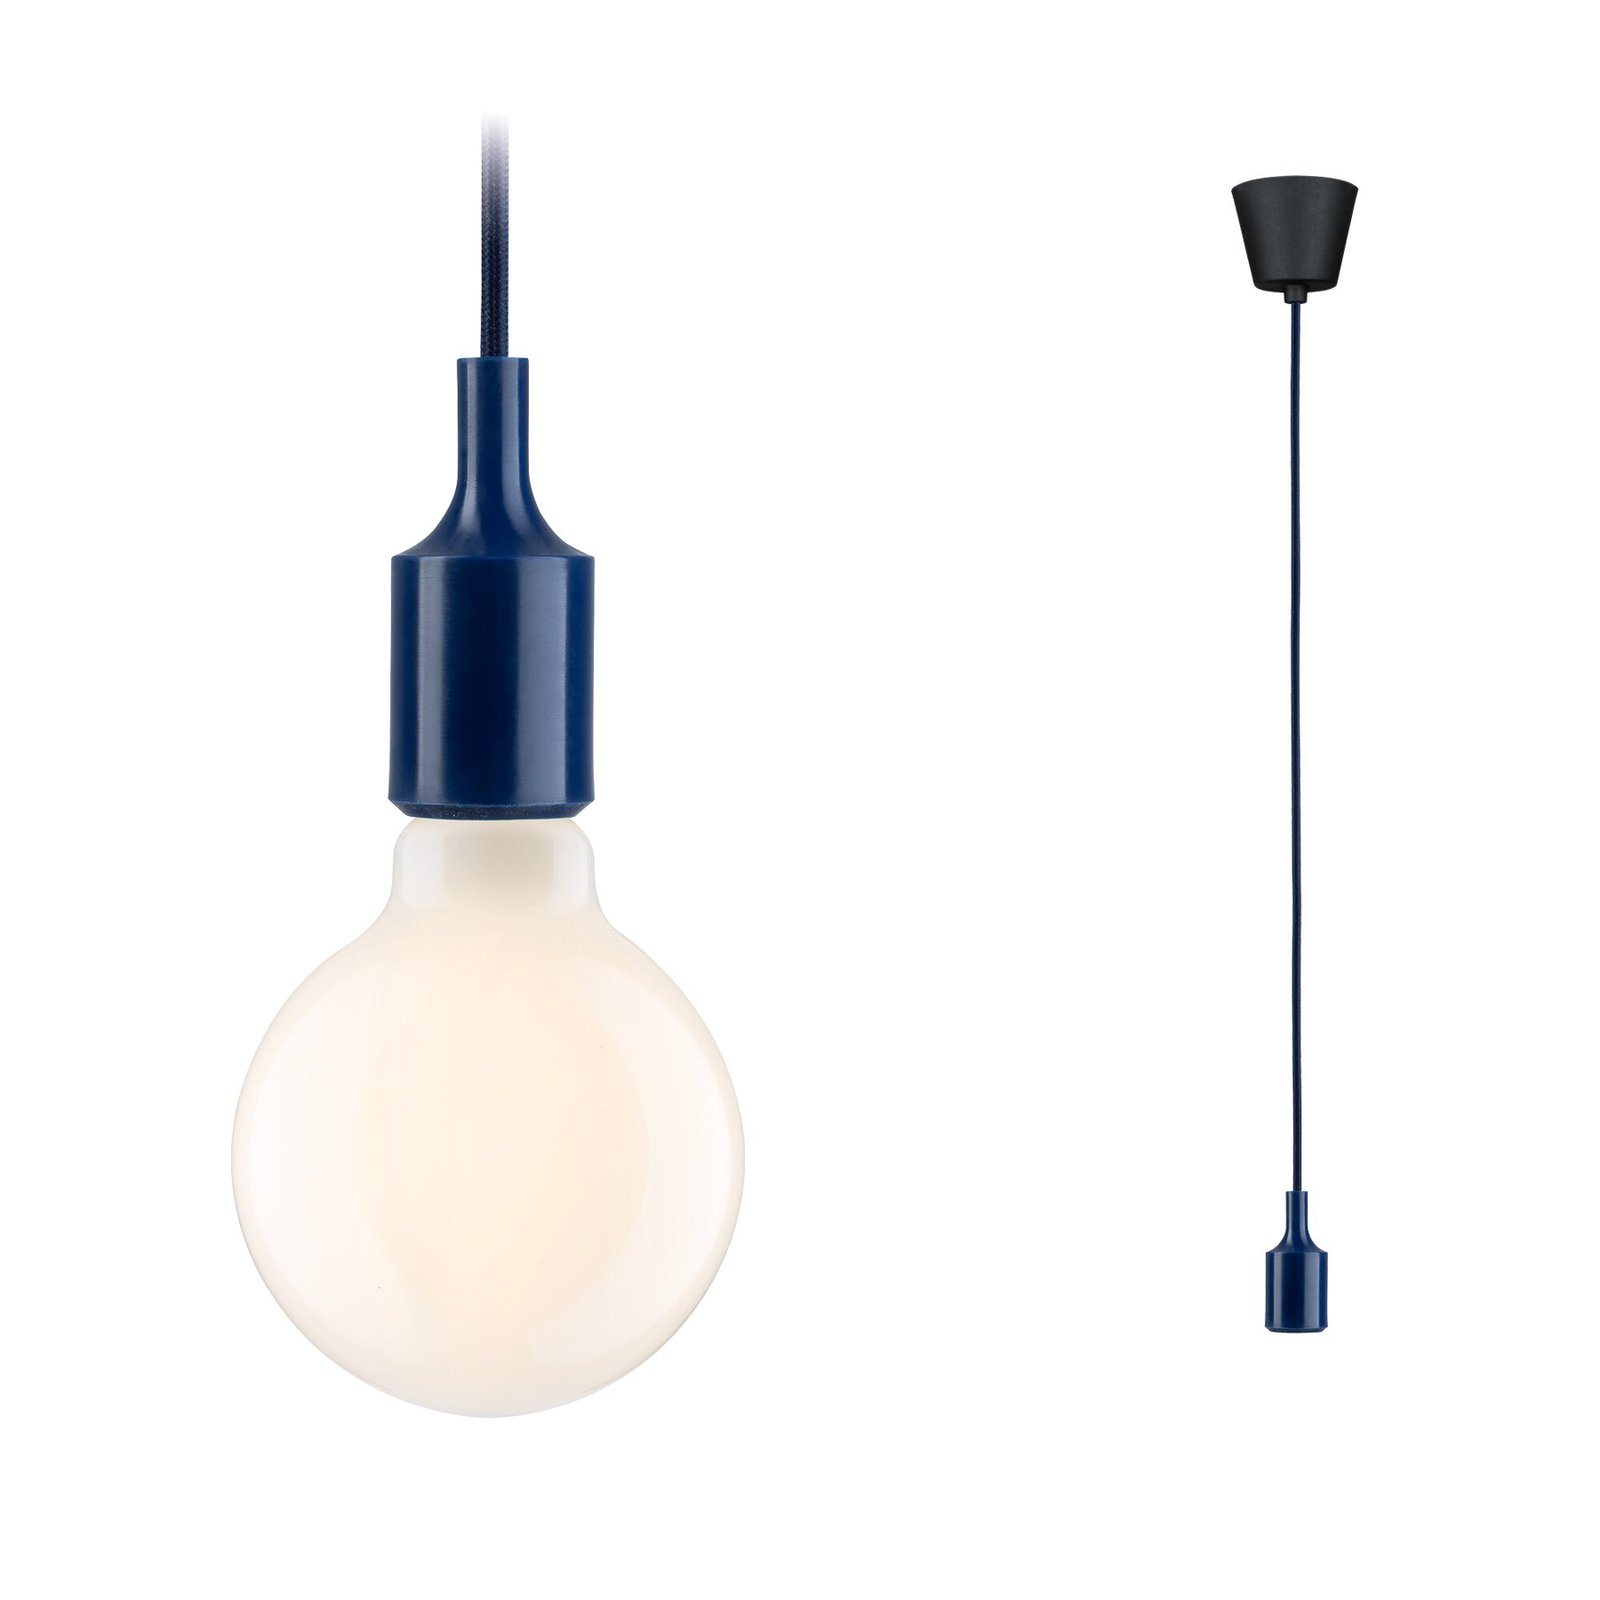 Paulmann Neordic Ketil hanglamp blauw/zwart